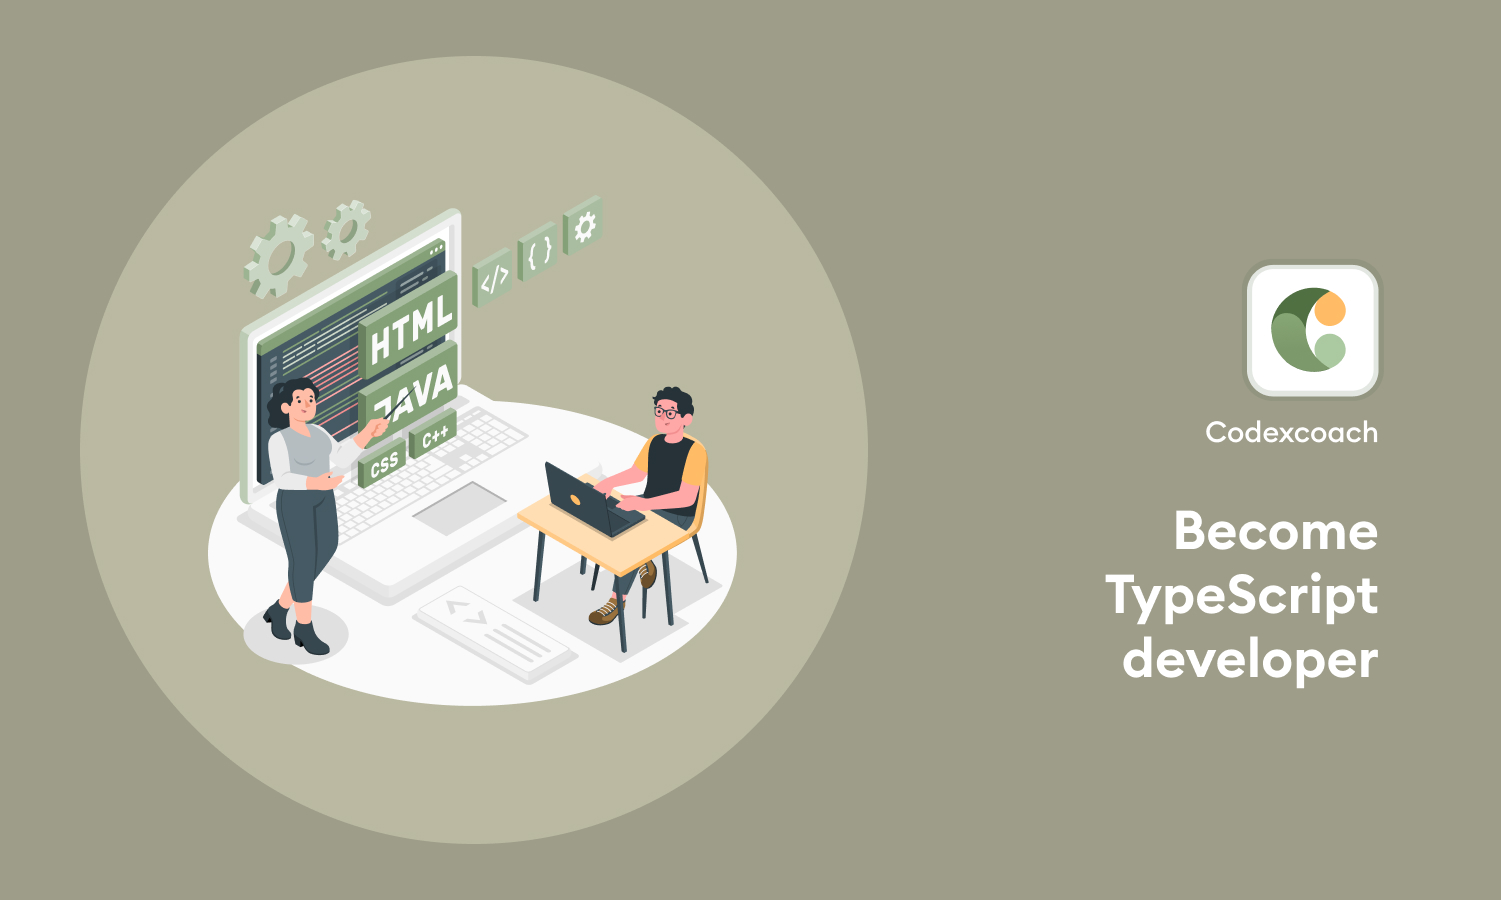 Become TypeScript developer